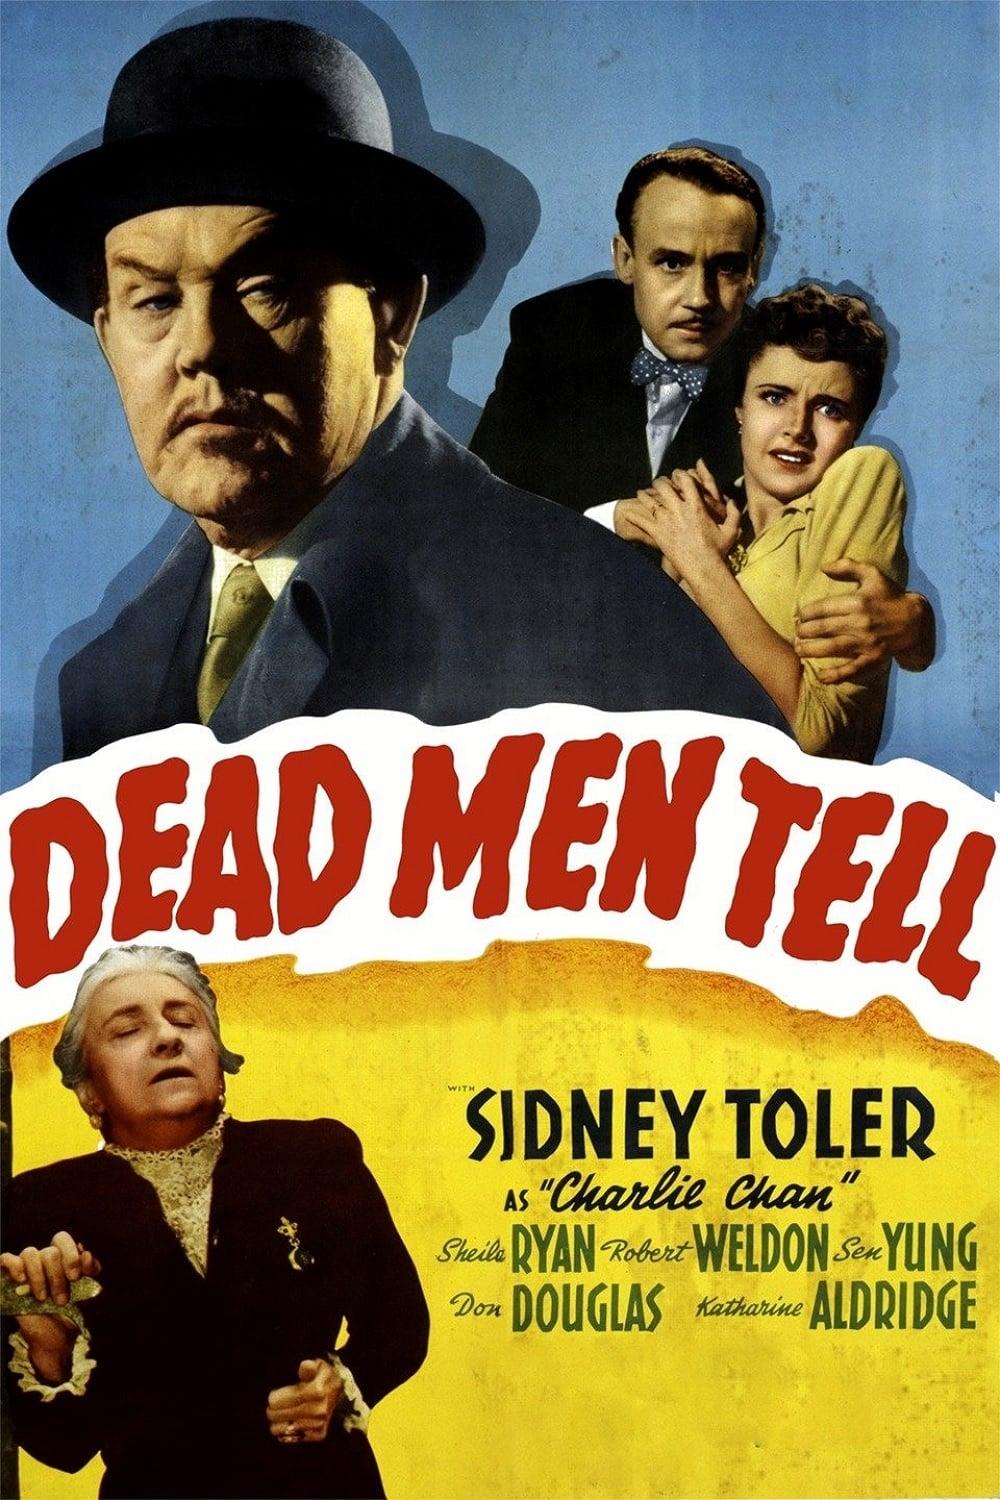 Dead Men Tell poster